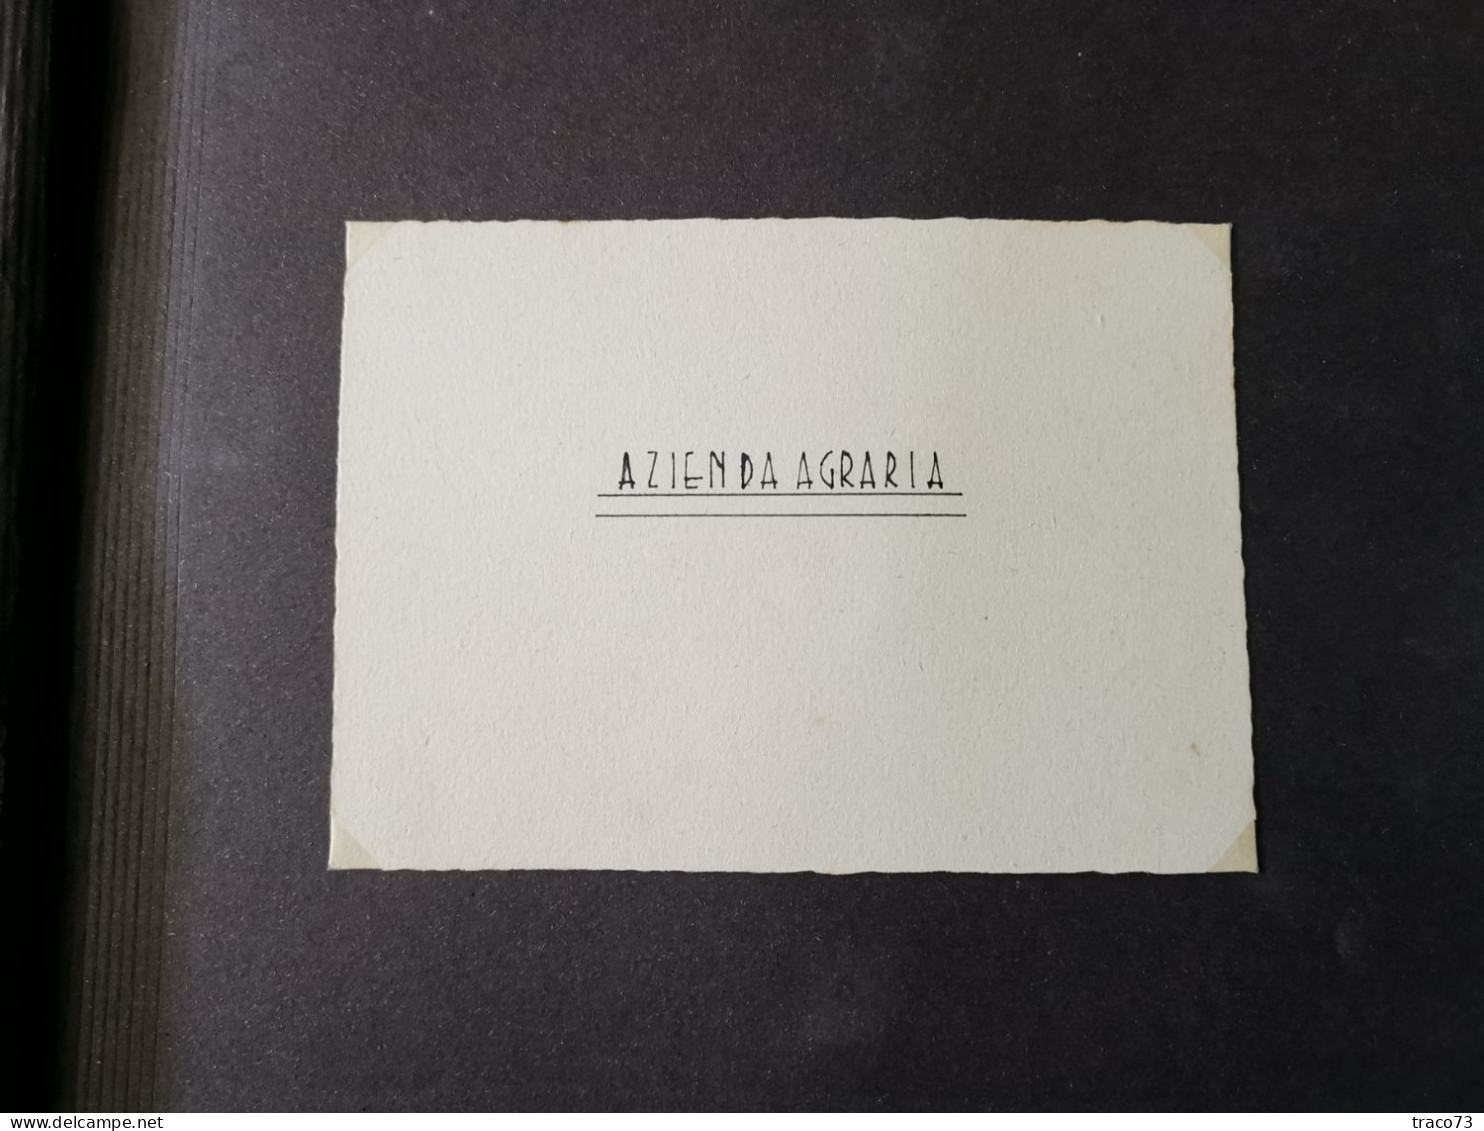 STRASATTI - MARSALA (TP) /  Scuola Professionale Agrario - Album fotografico _Fine anni '40 primi '50